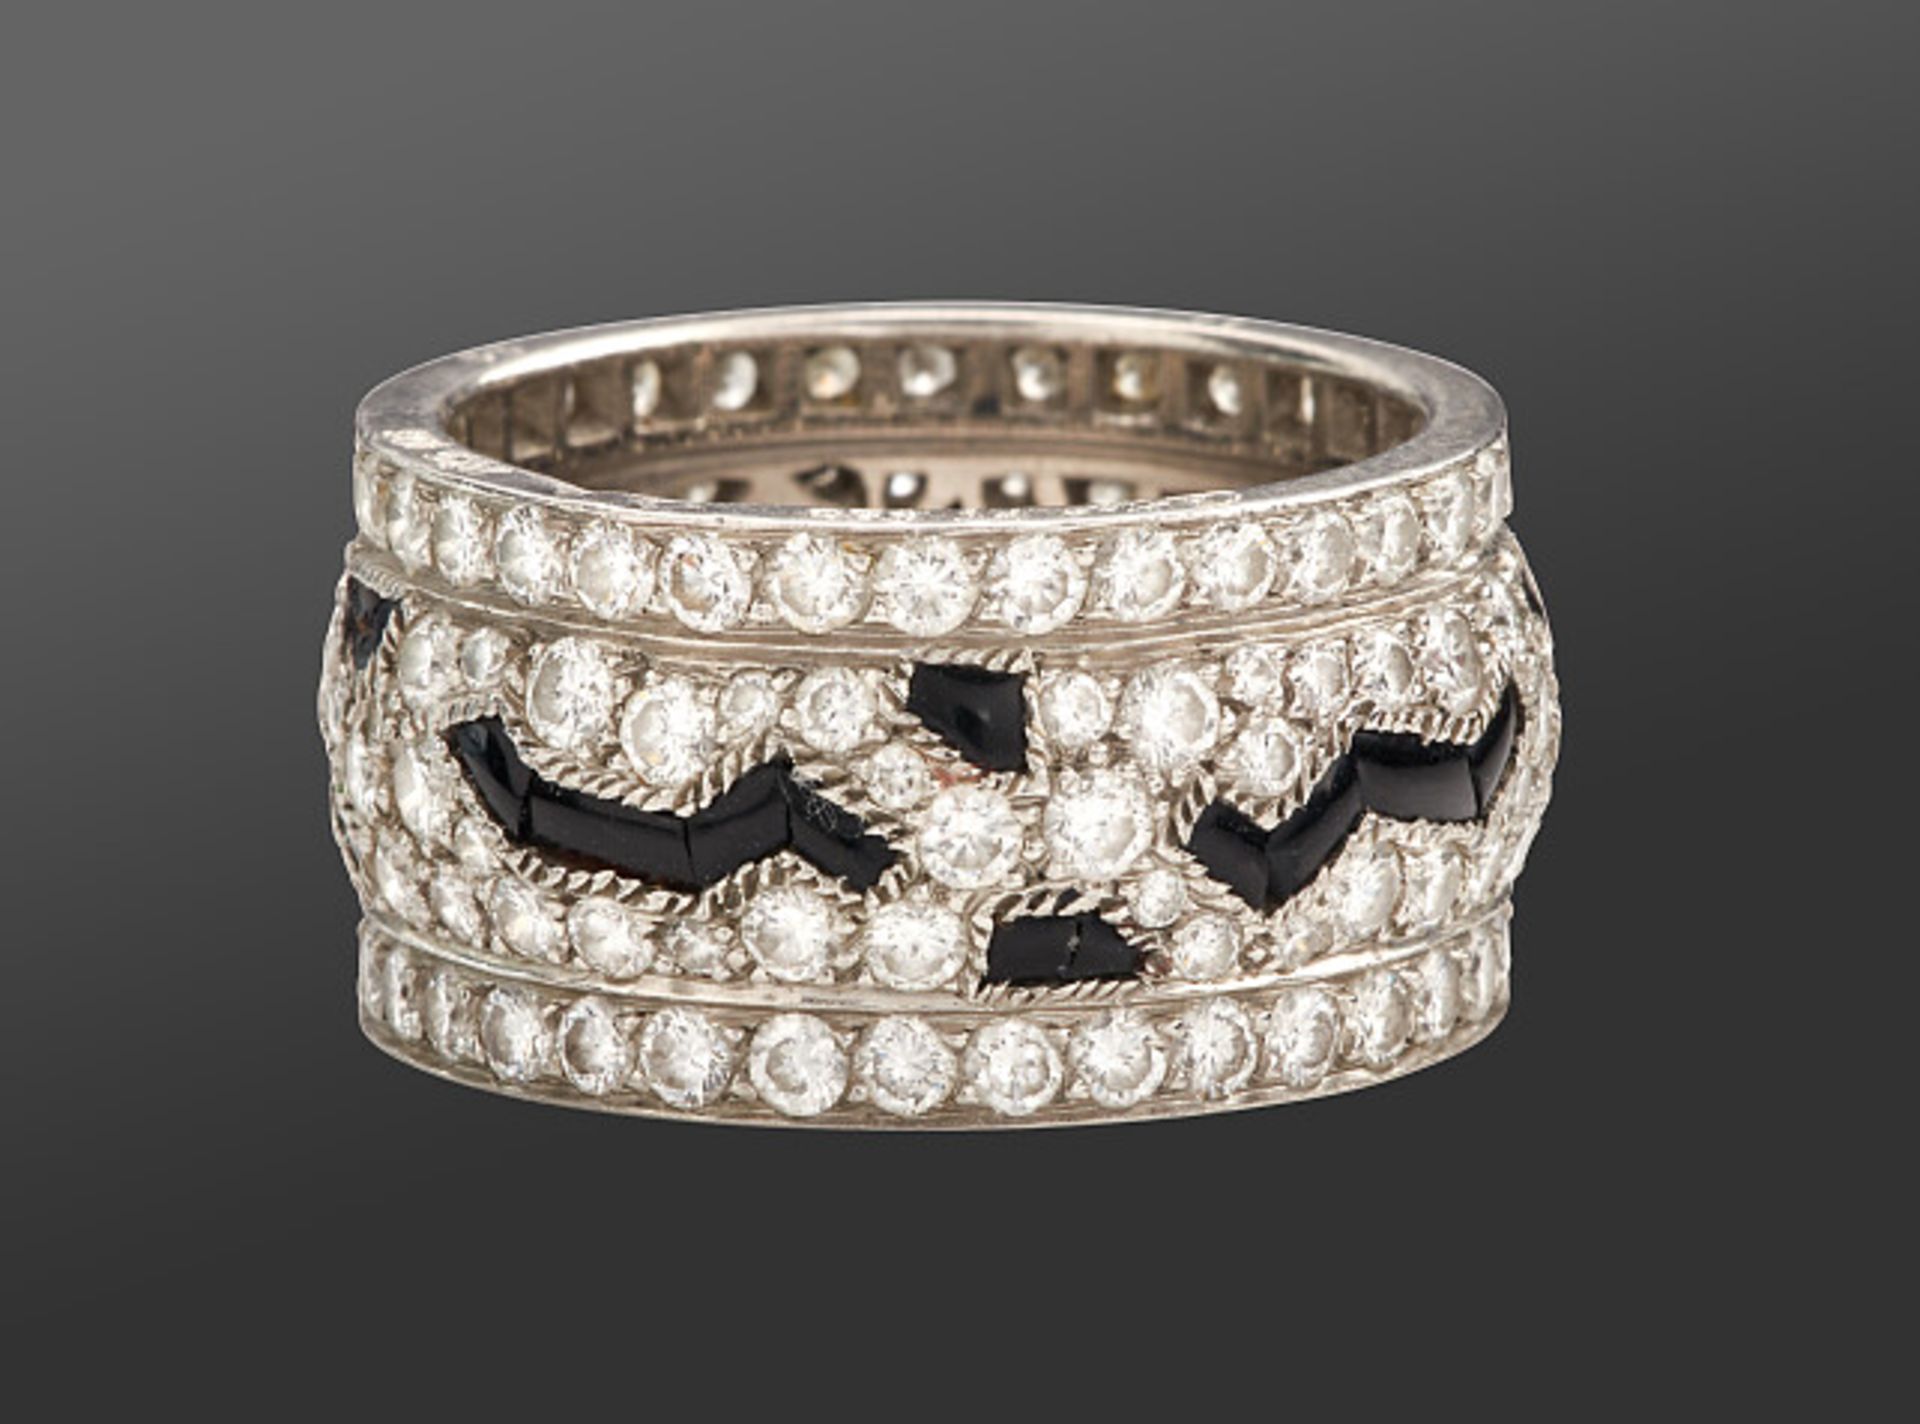 Deutsches Reich 1933 - 1945 - Schmuck und Juwelen : Diamant - Onyx Ring by Cartier. - Bild 3 aus 15